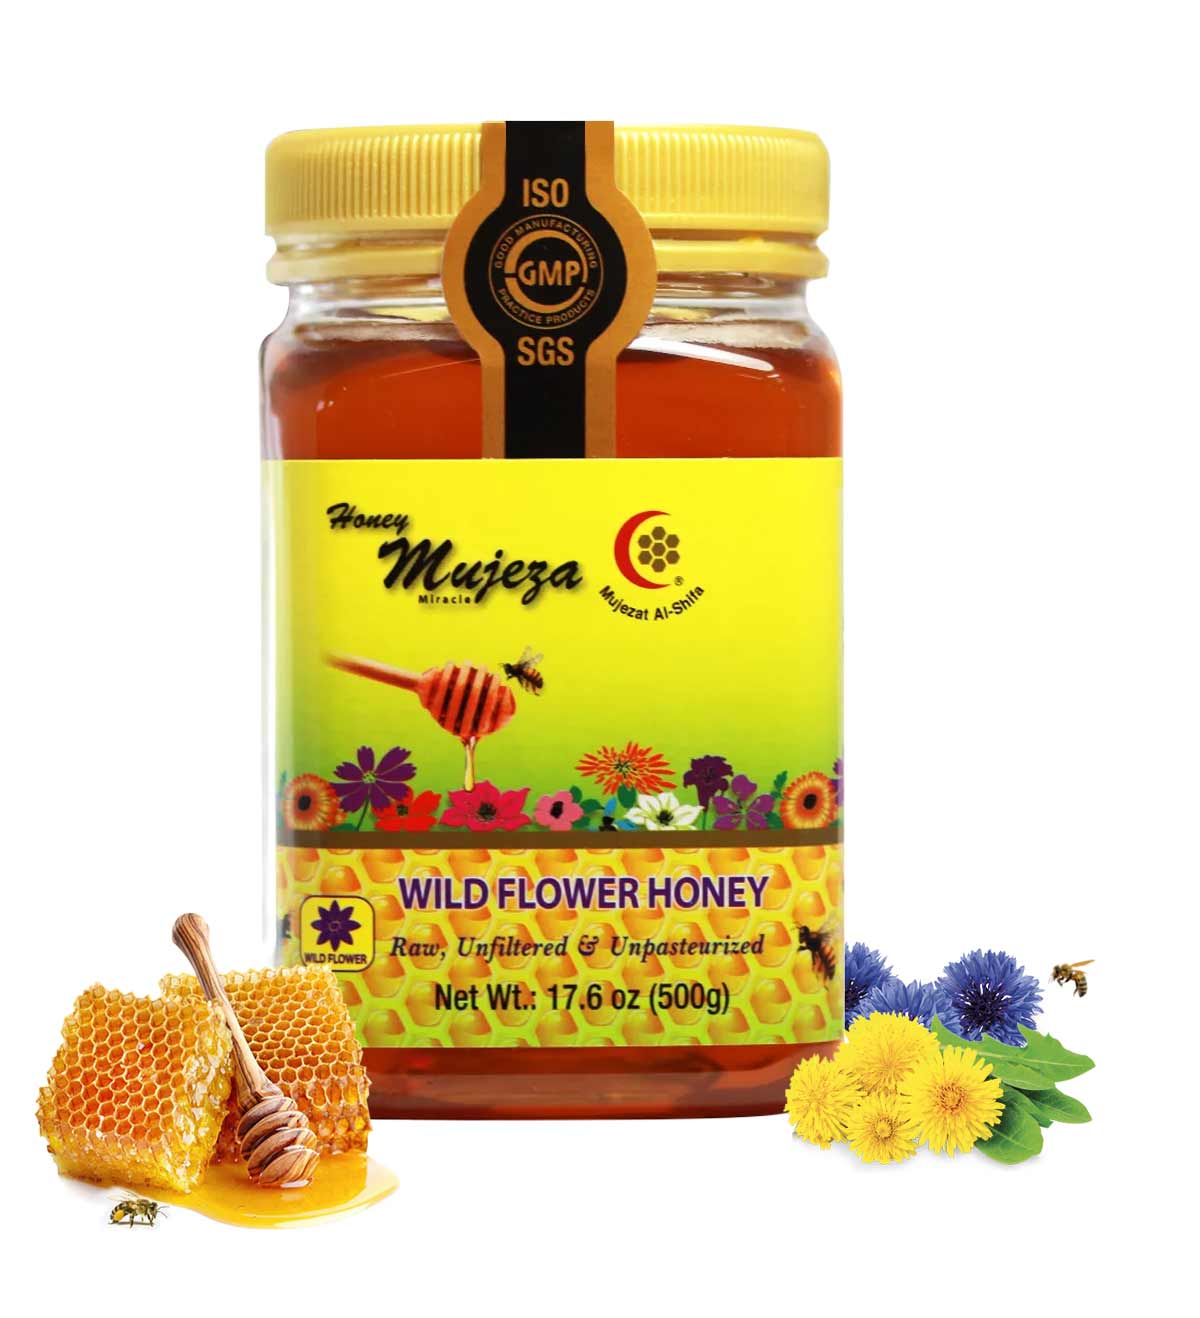 Mujeza Best Pure Wildflower Honey - عسل الزهور البرية الصافي - Mujeza Honey